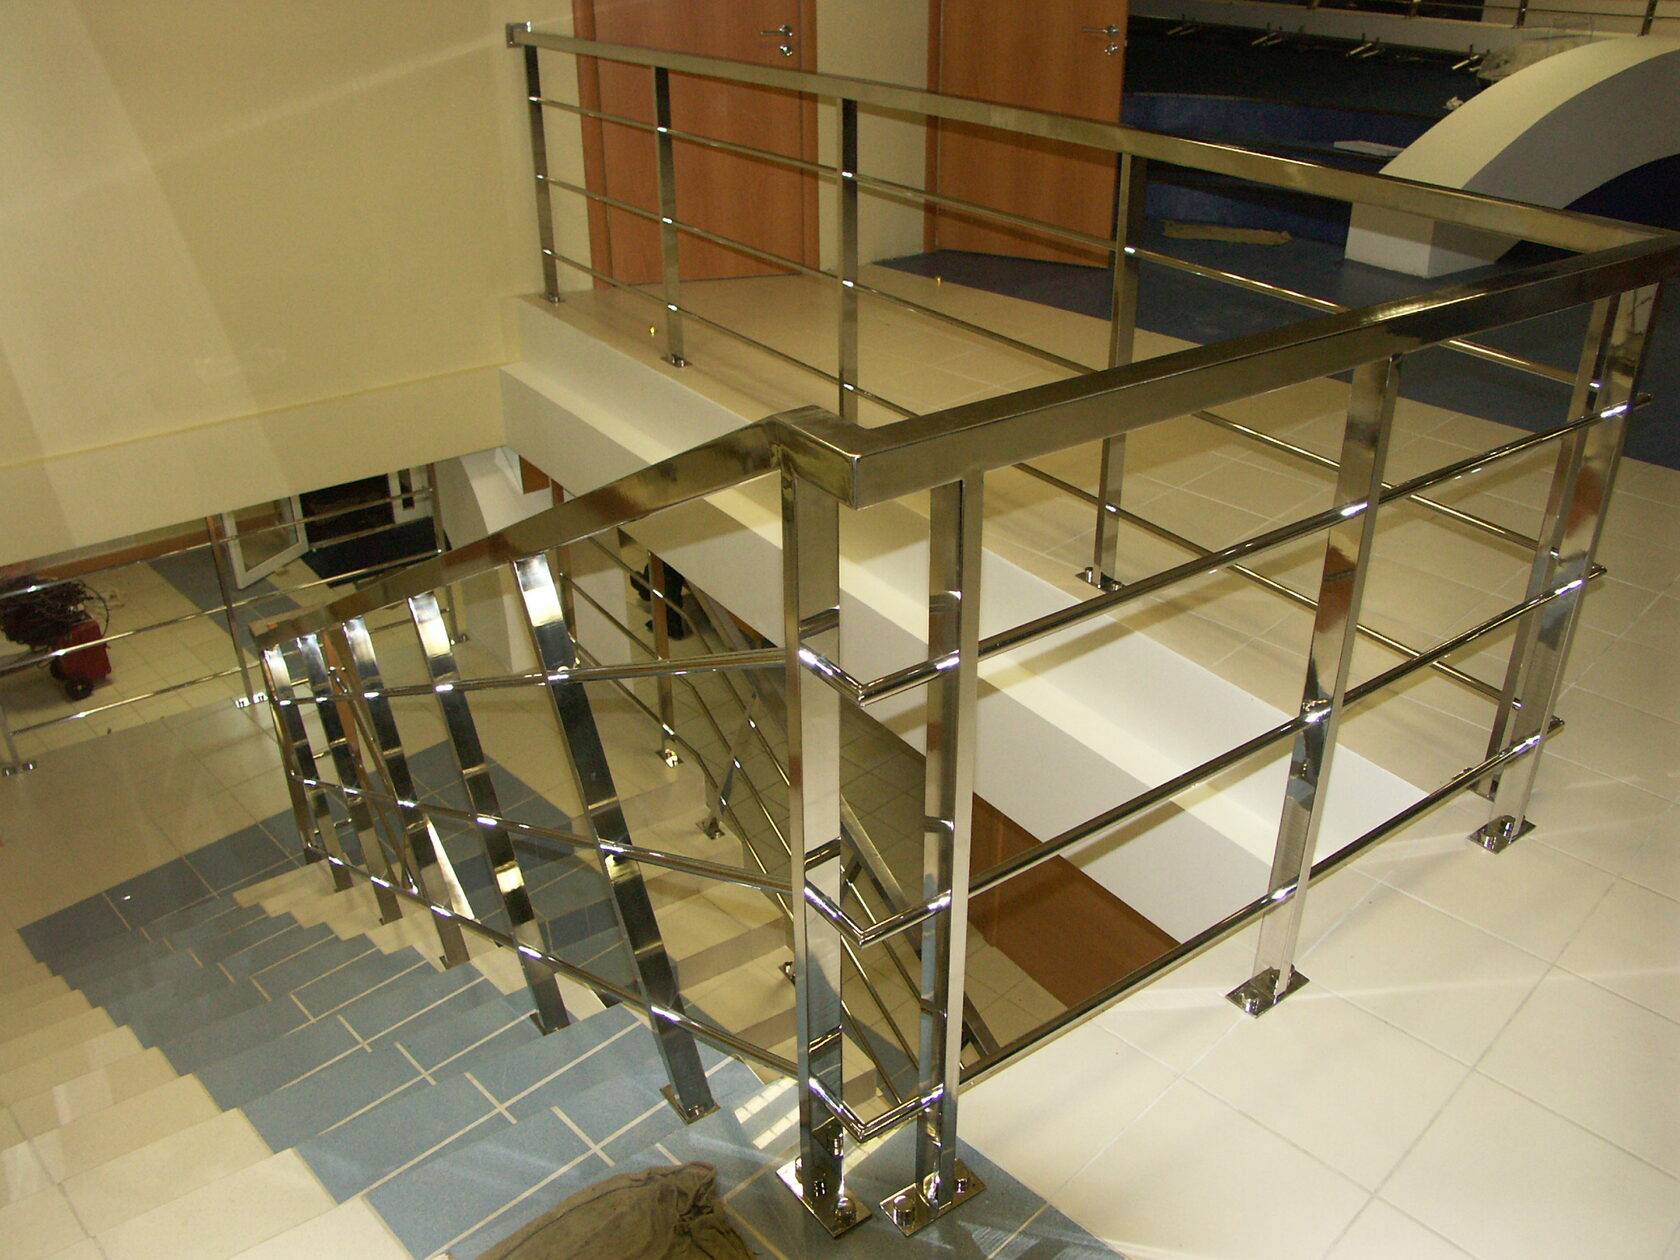 Поручни: нержавейка в сочетании со стеклом и деревом, механические свойства настенных перил лестниц